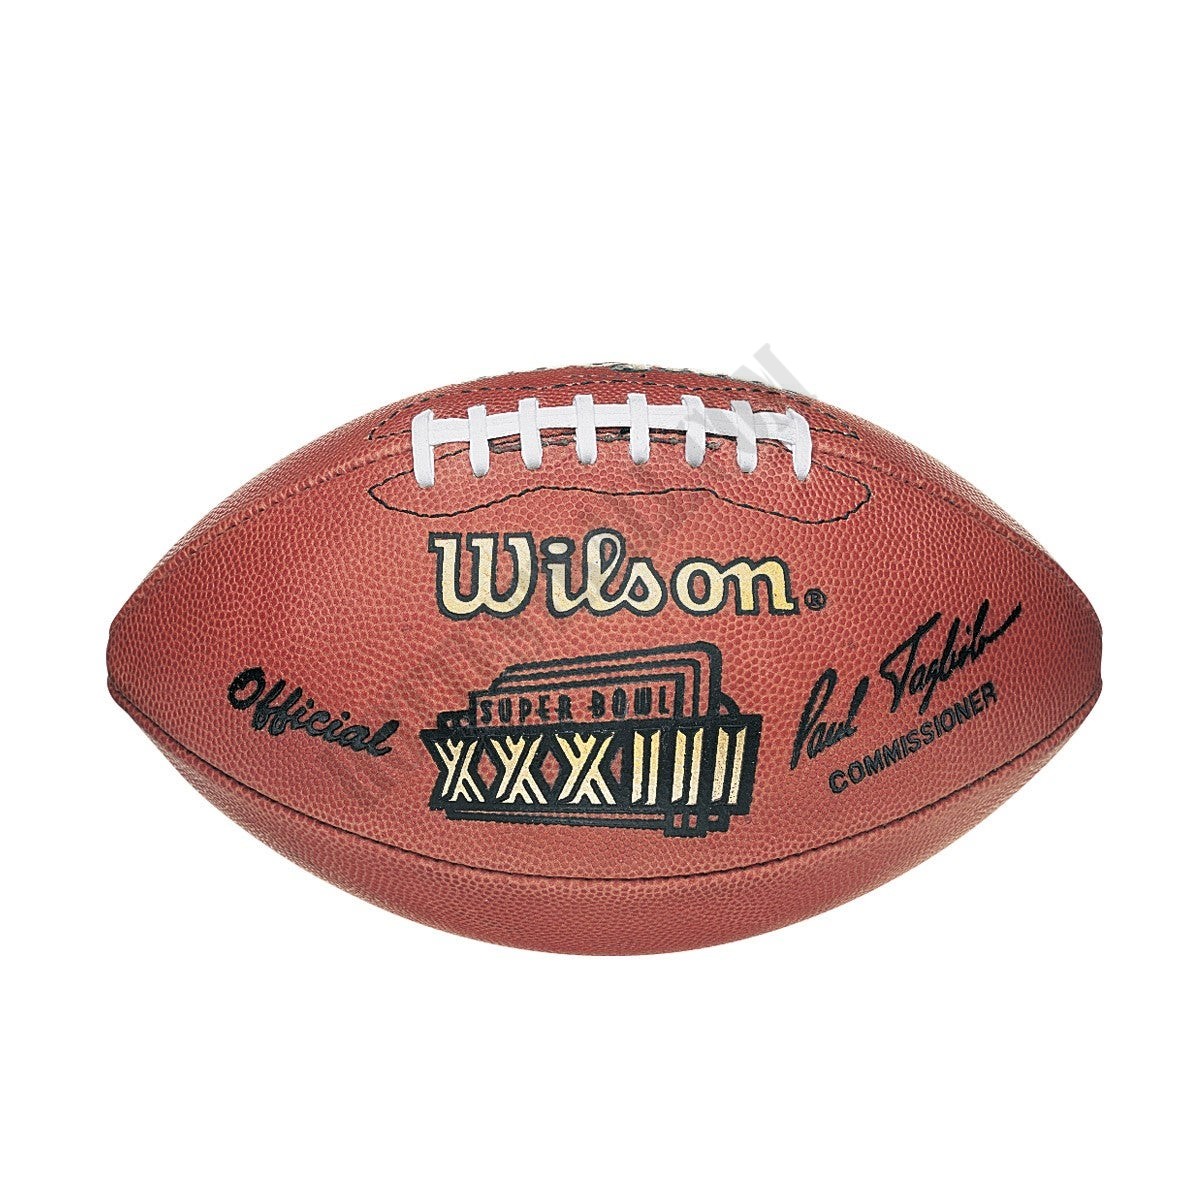 Super Bowl XXXIII Game Football - Denver Broncos ● Wilson Promotions - Super Bowl XXXIII Game Football - Denver Broncos ● Wilson Promotions